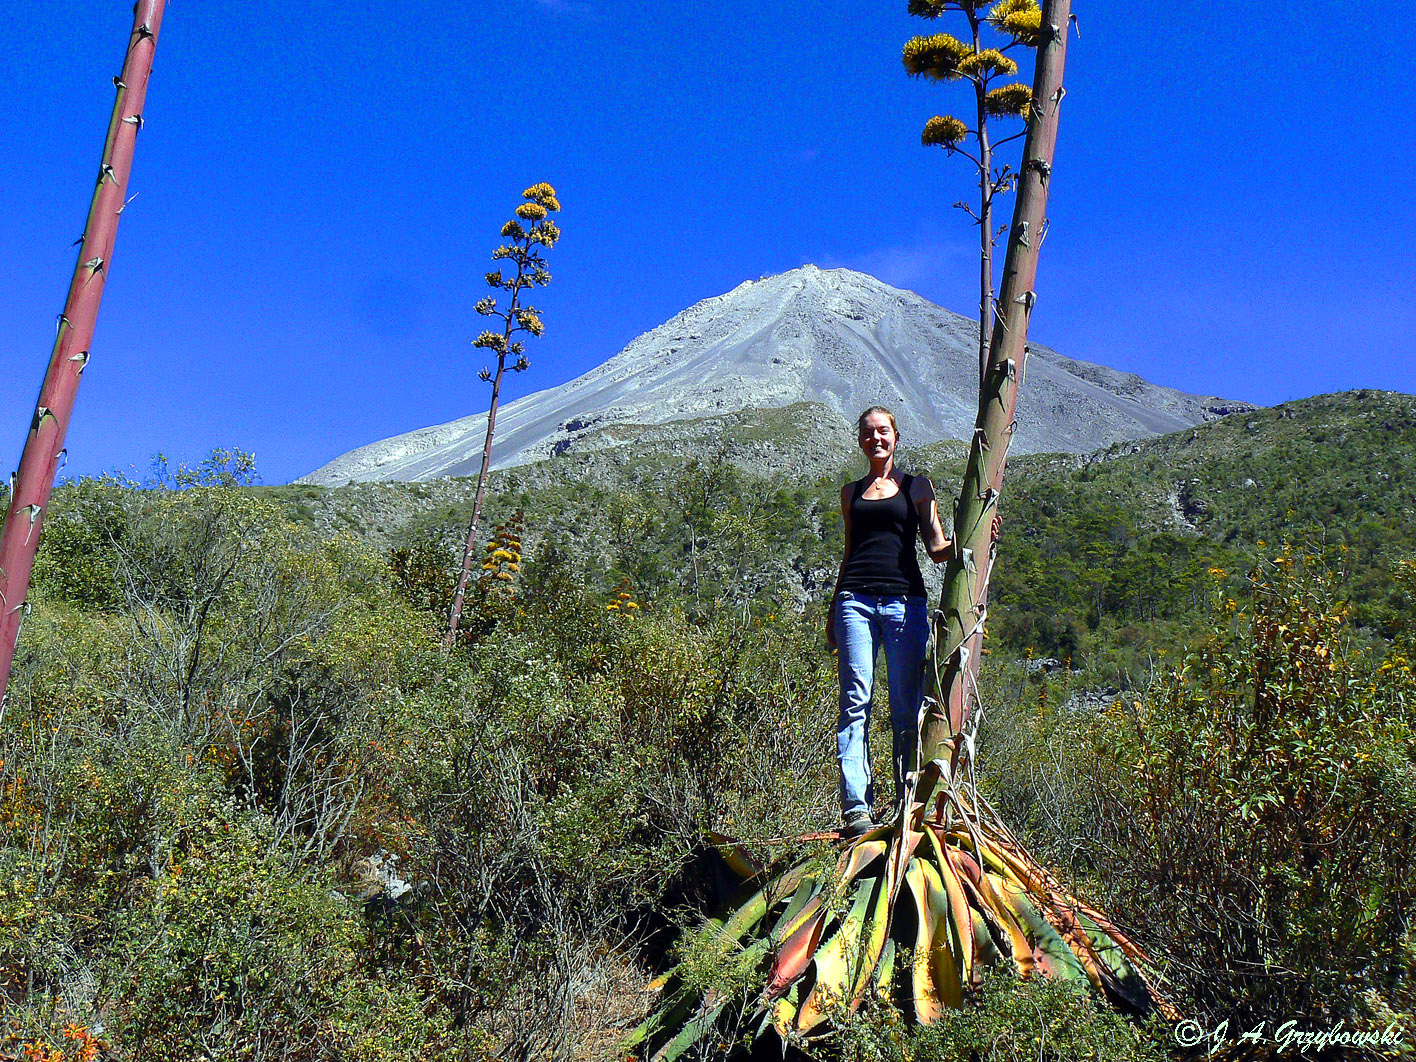 posing below the Volcan de Colima